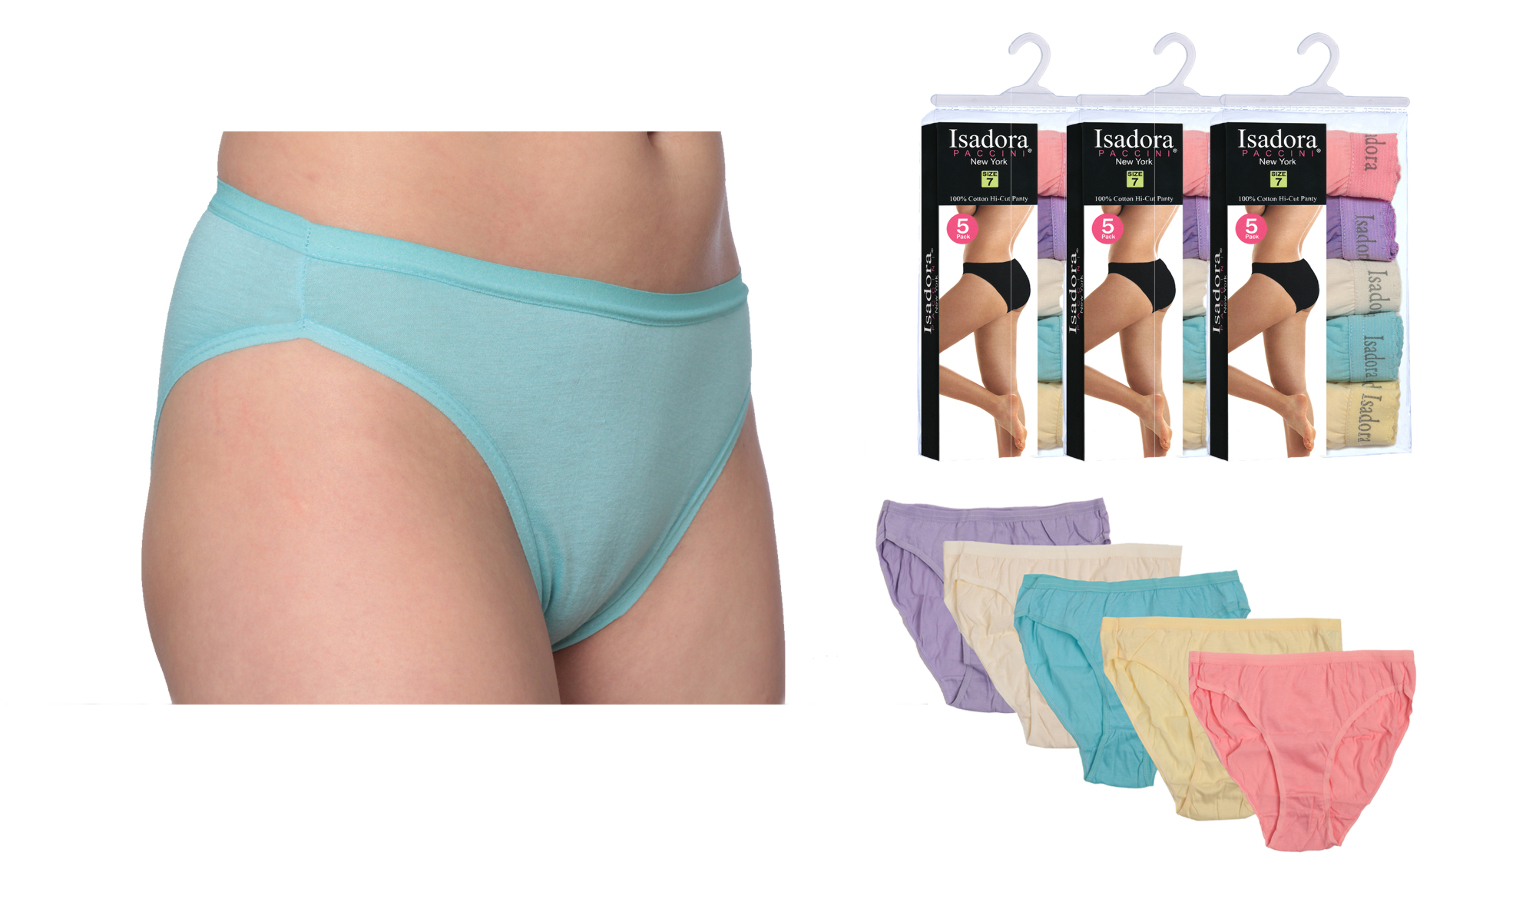 Fruit of the Loom Ladies' Coolblend Bikini Panties, 4-pack 